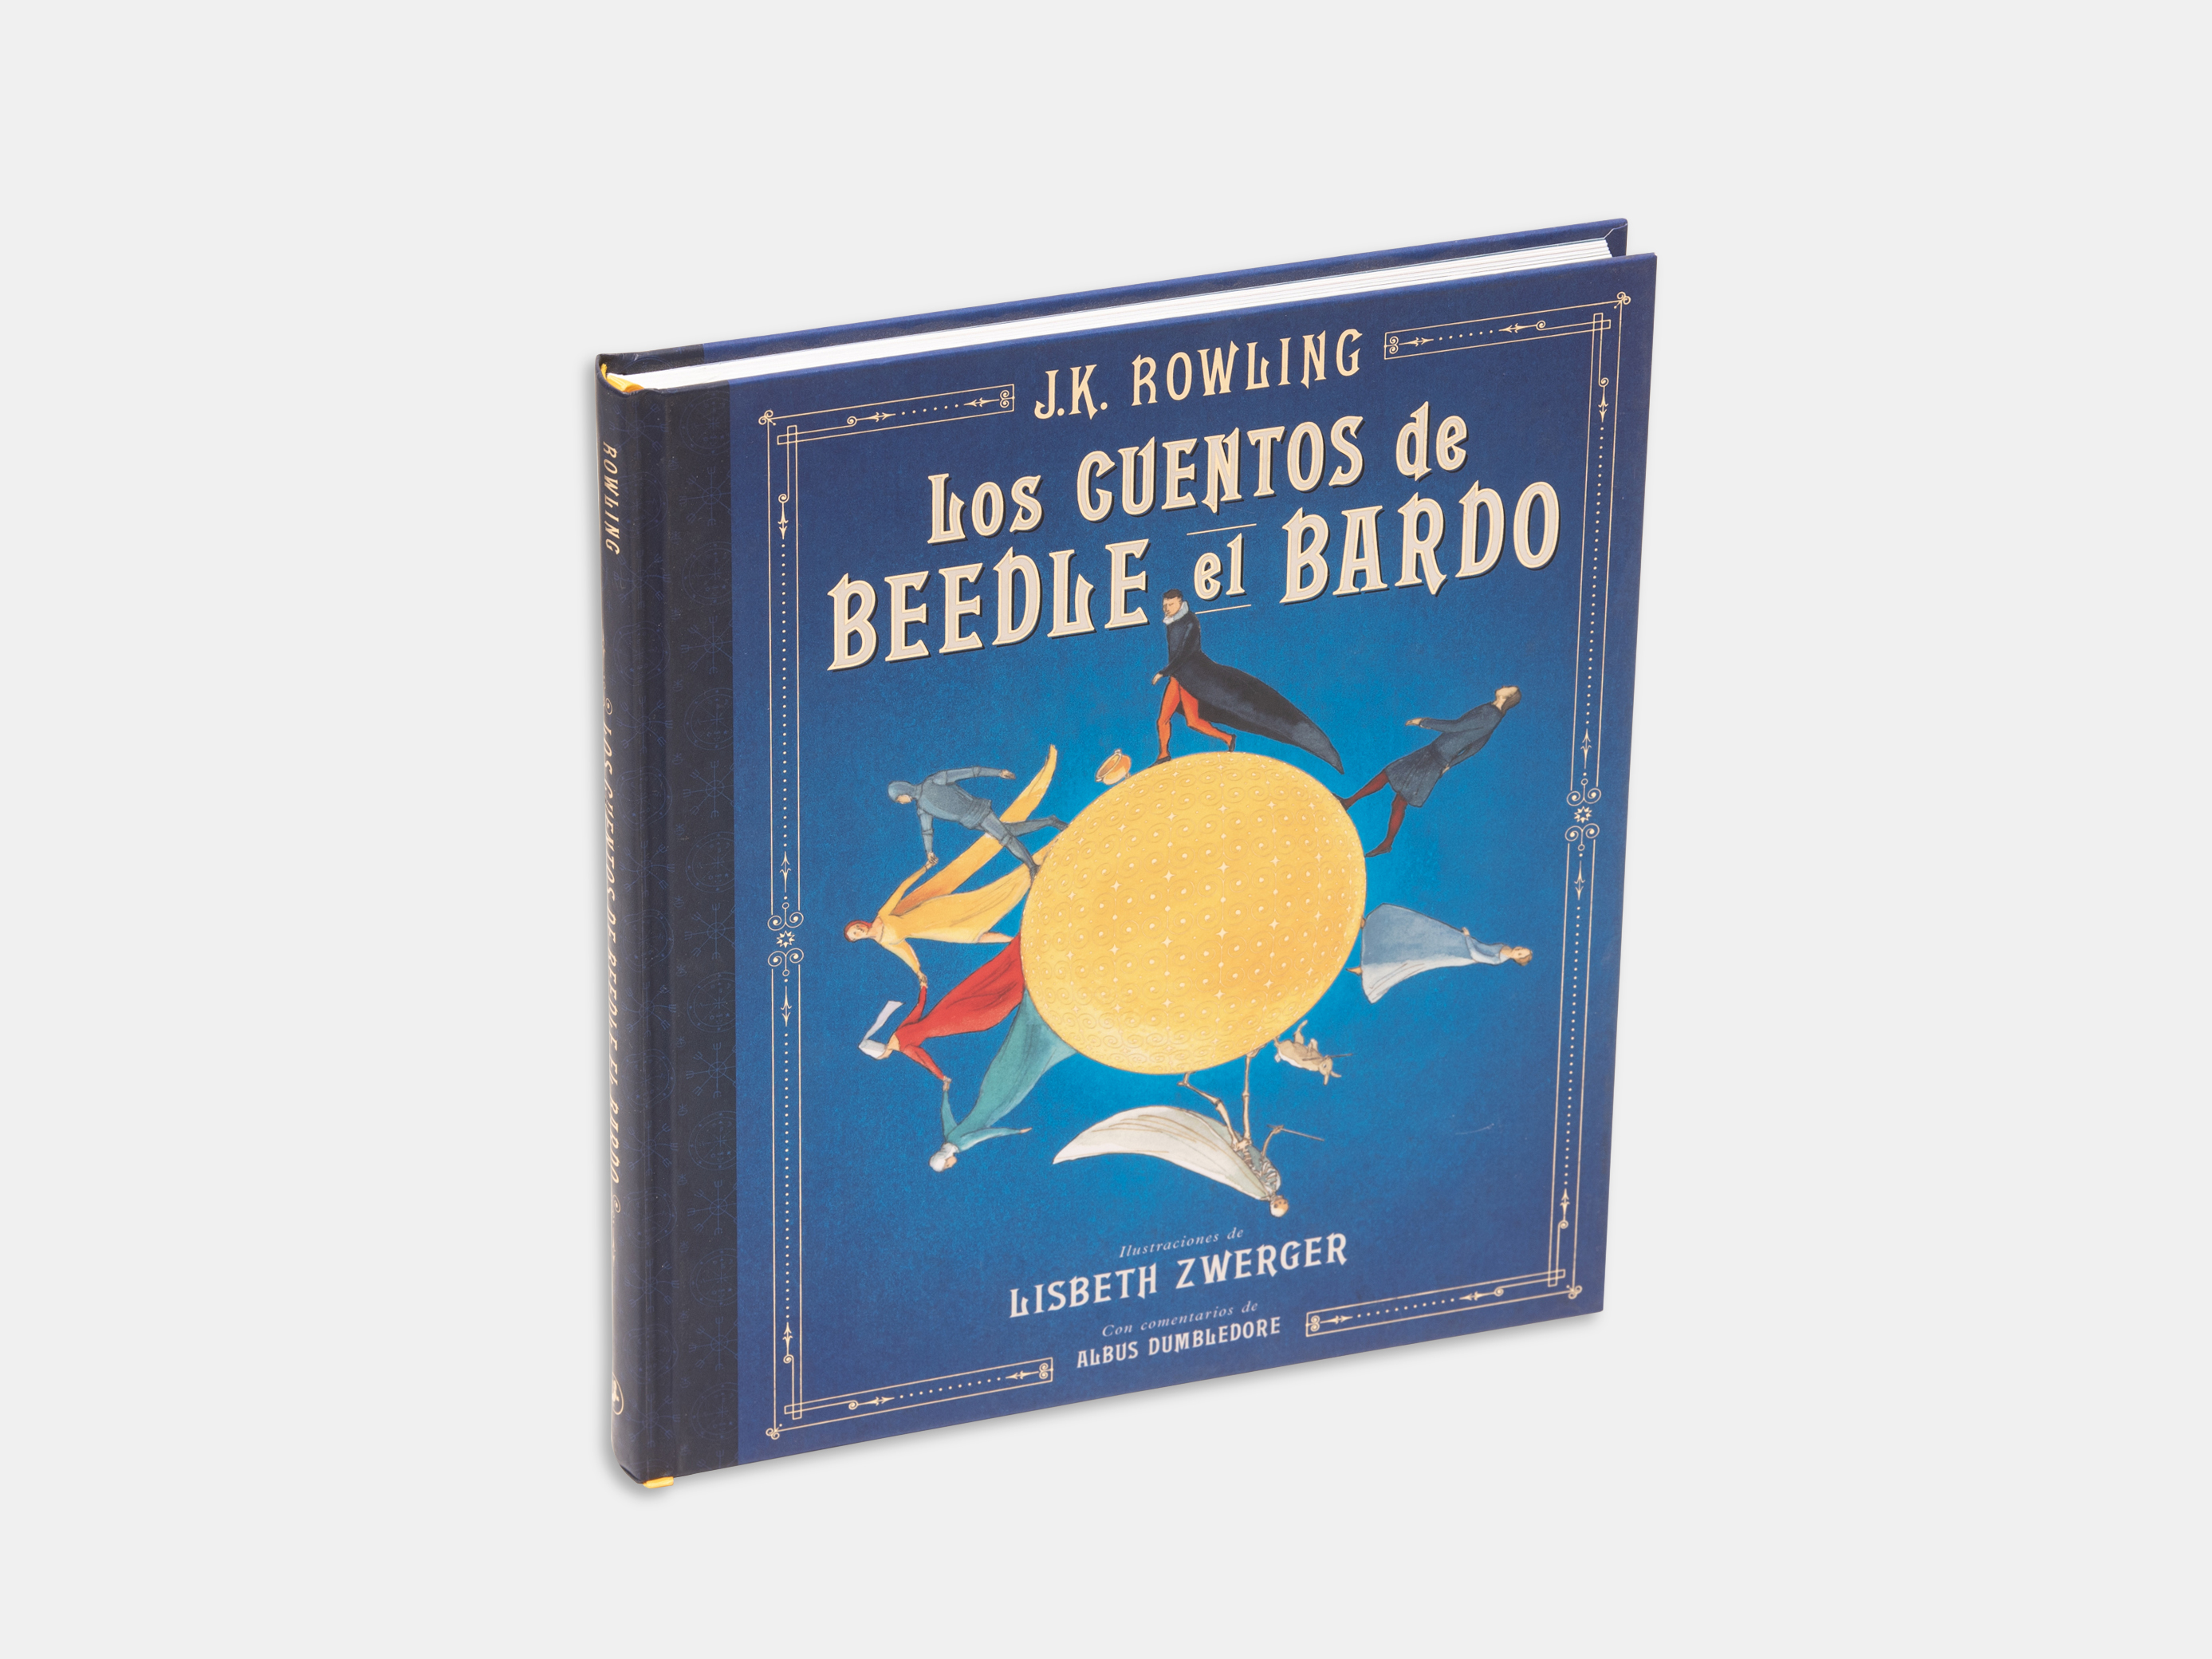 Libro Los cuentos de Beedle el Bardo J. K. Rowling, ilustraciones de  Lisbeth Zwerger. |